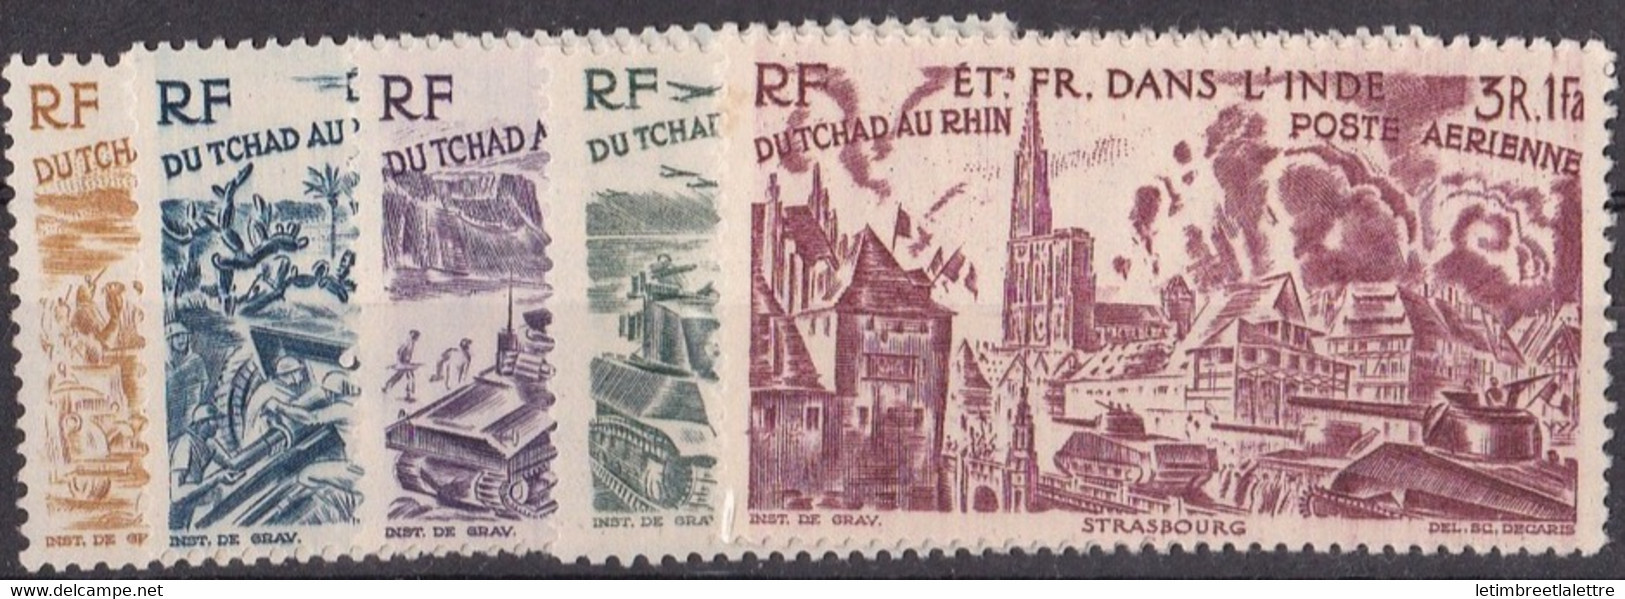 ⭐ Inde - Poste Aérienne - YT N° 11 à 16 ** - Neuf Sans Charnière - 1946 ⭐ - Unused Stamps